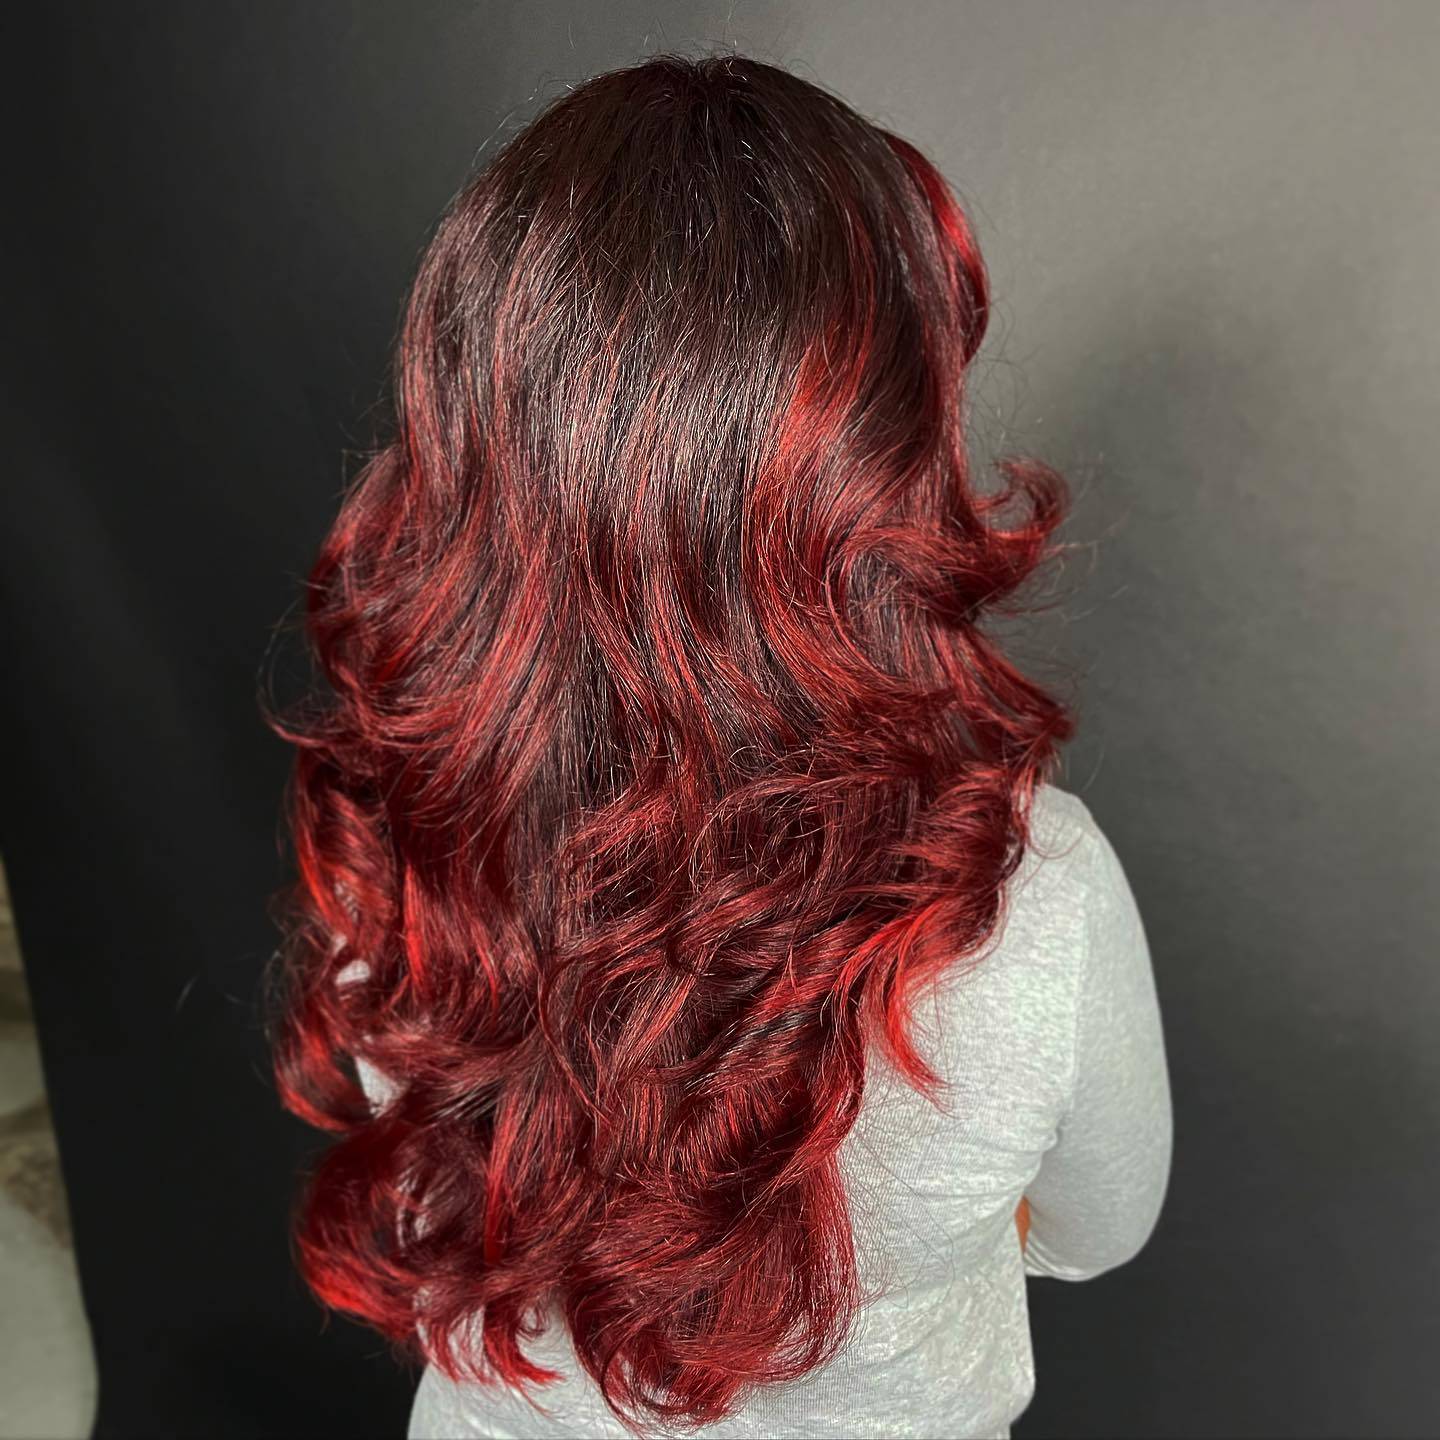 Burgundy hair color 154 burgundy hair color | burgundy hair color for women | burgundy hair color highlights Burgundy Hair Color